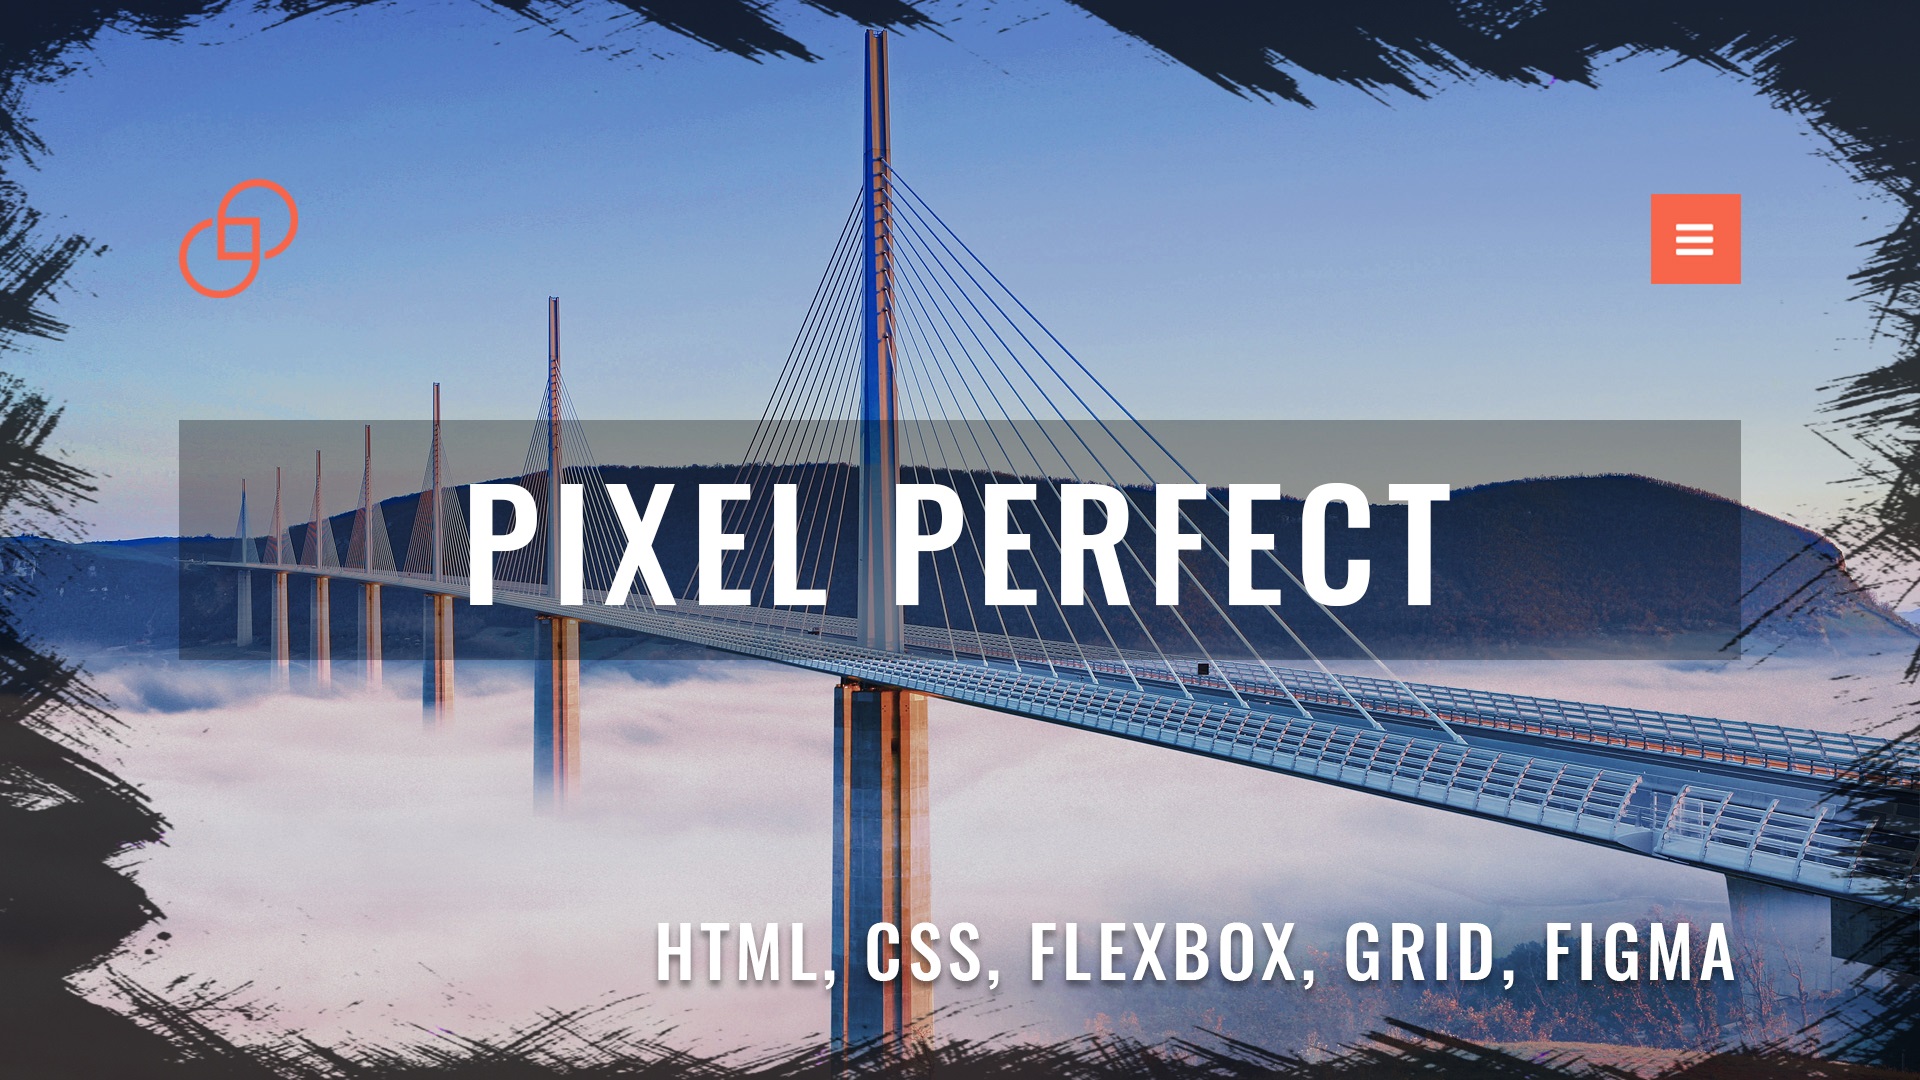 Адаптивная верстка сайта с нуля по макету из Figma #3 Pixel Perfect